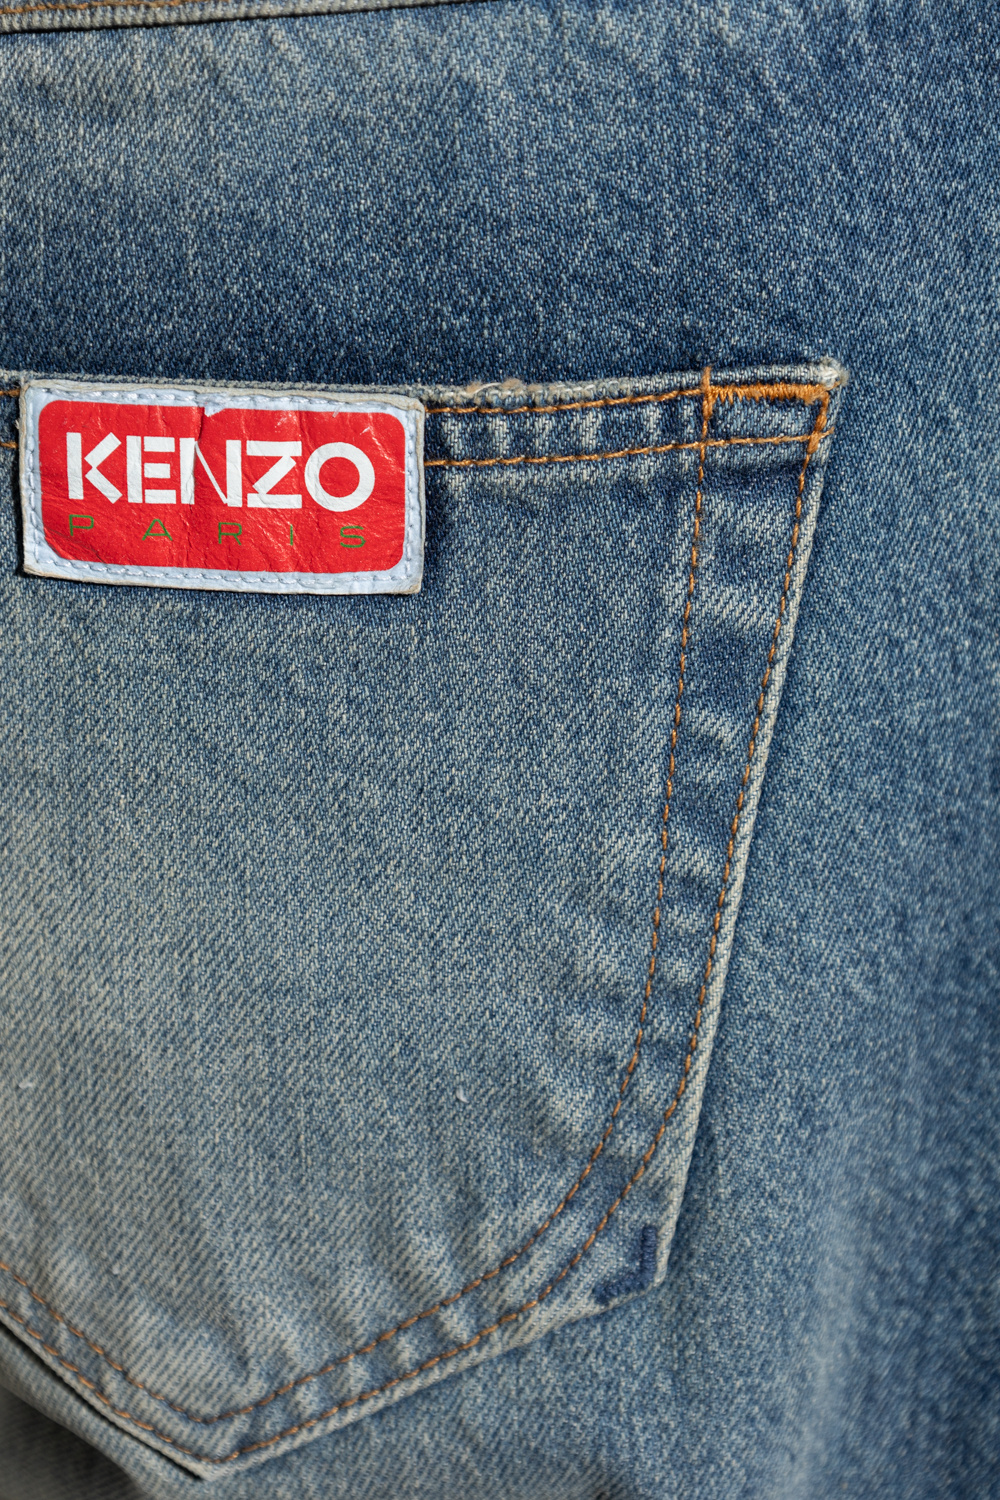 Kenzo Top azul marino de manga larga con logo estampado en la espalda de Tommy Jeans